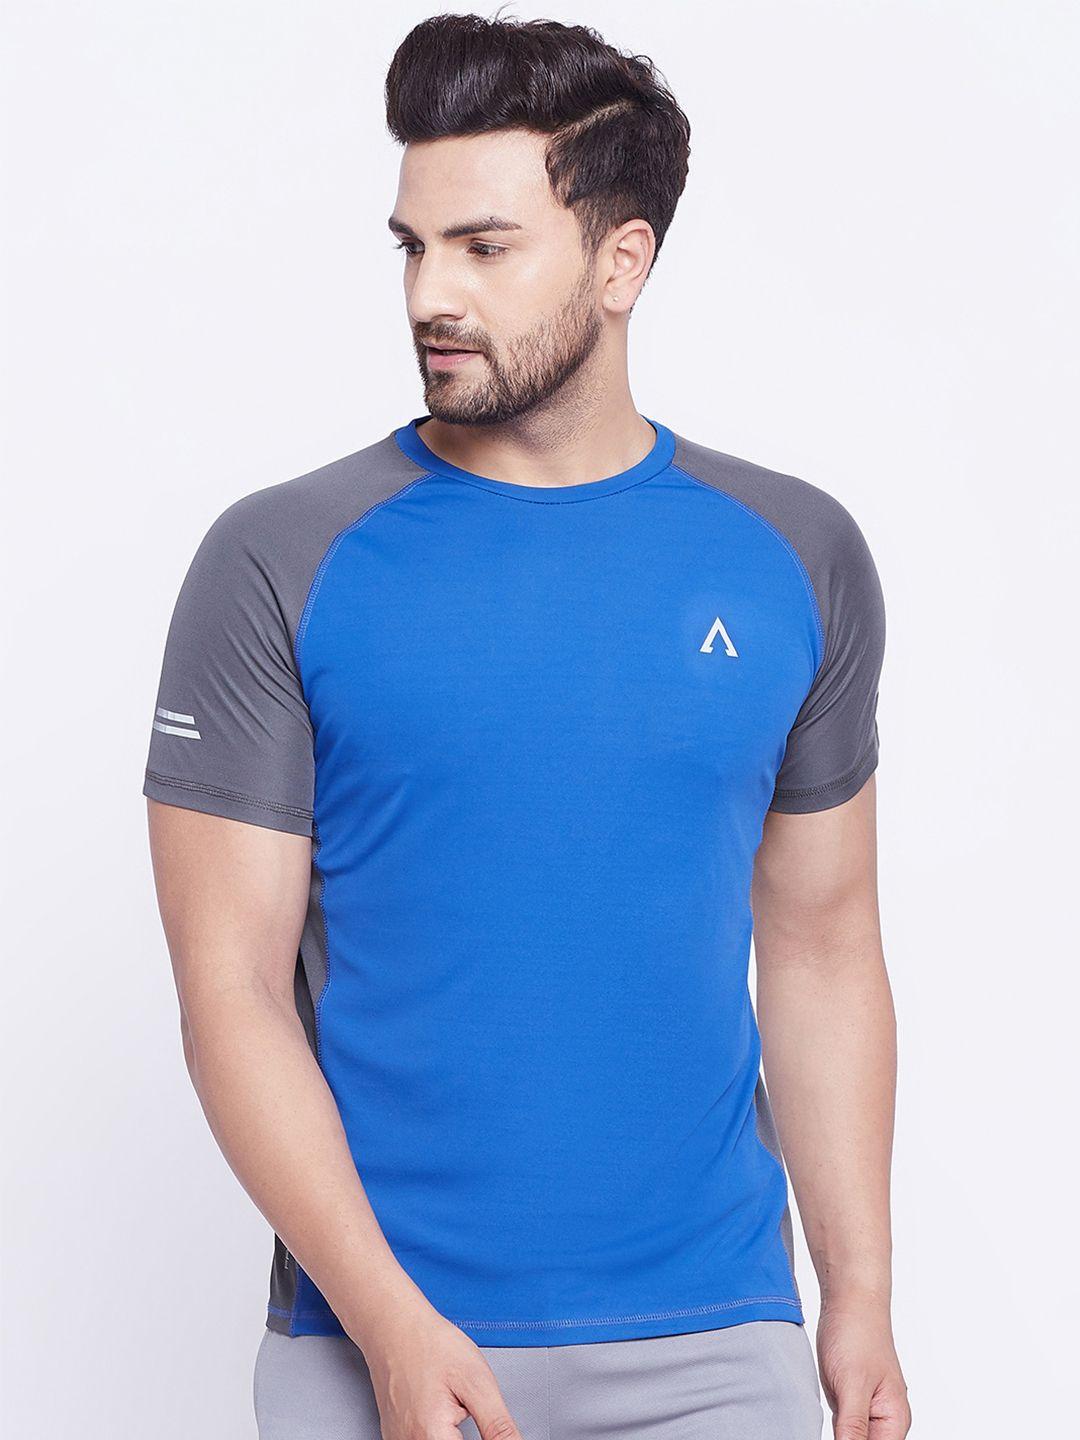 austiex men blue & grey colourblocked raglan sleeves slim fit running t-shirt